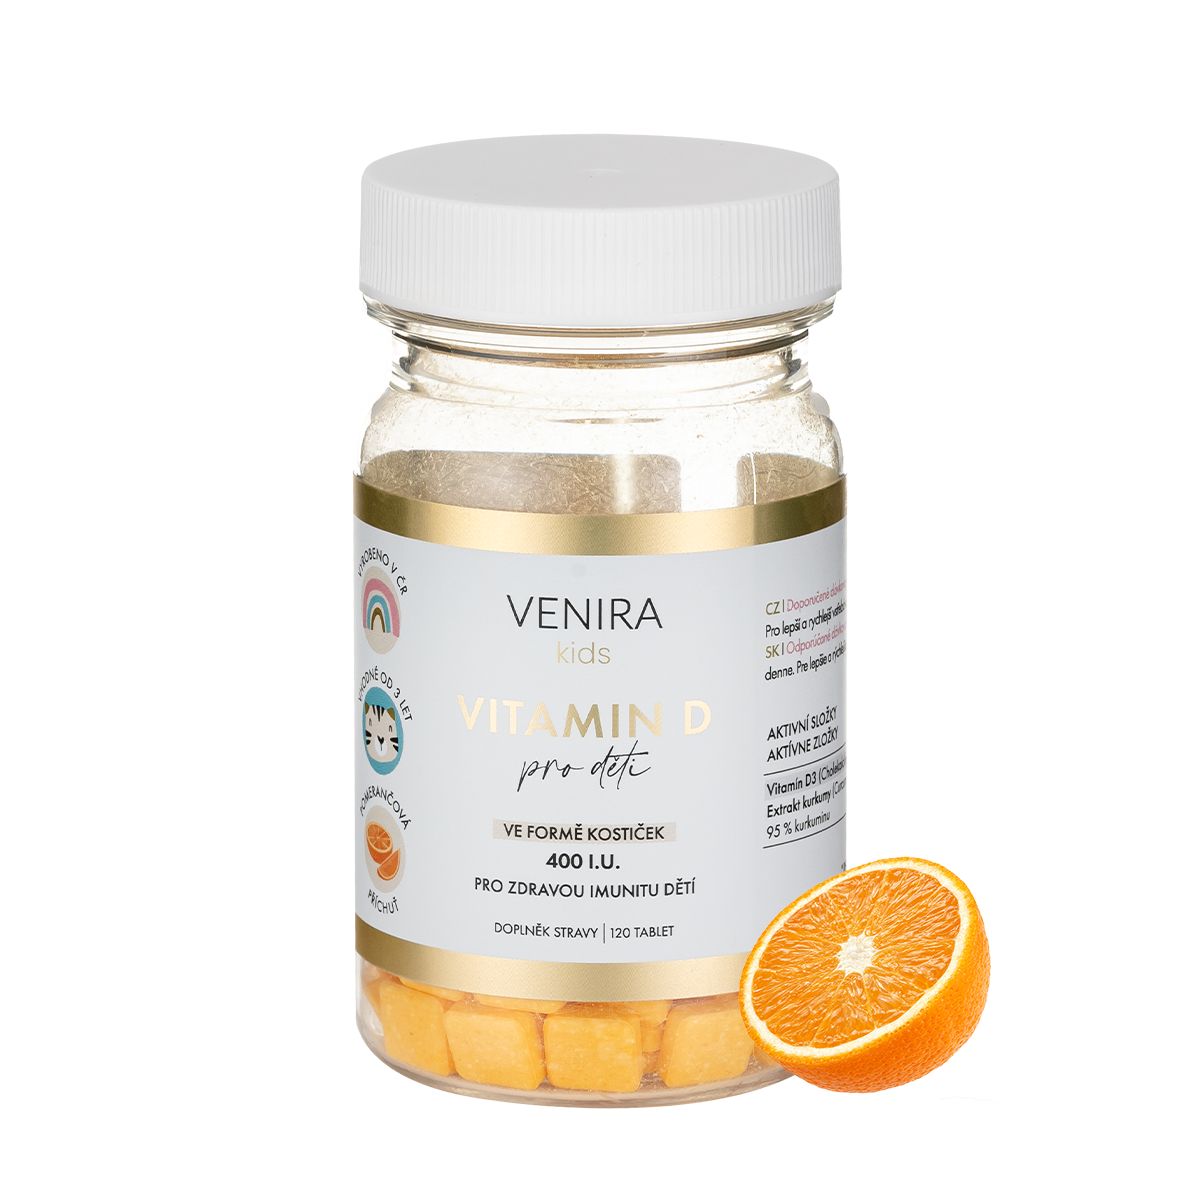 Venira kids Vitamin D pro děti ve formě kostiček pomeranč 120 tablet Venira